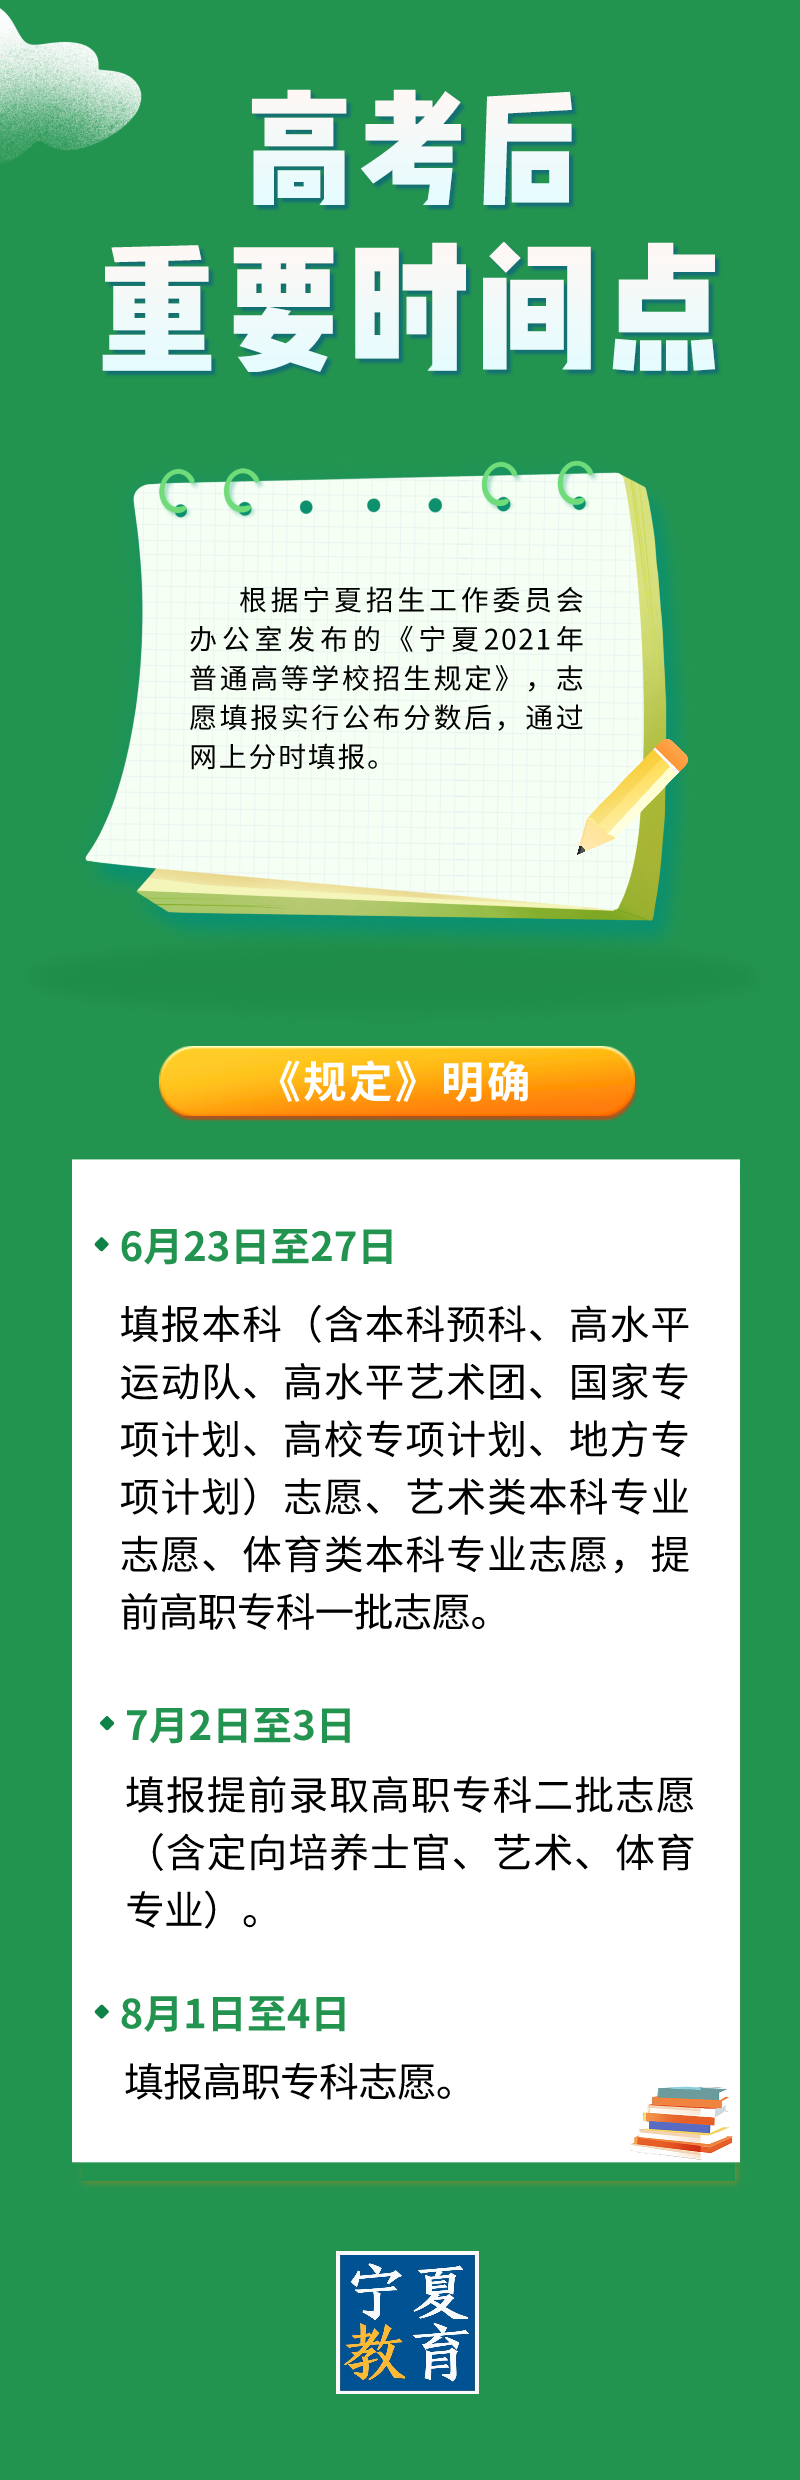 2021年宁夏高考工作圆满结束，预计6月23日公布成绩